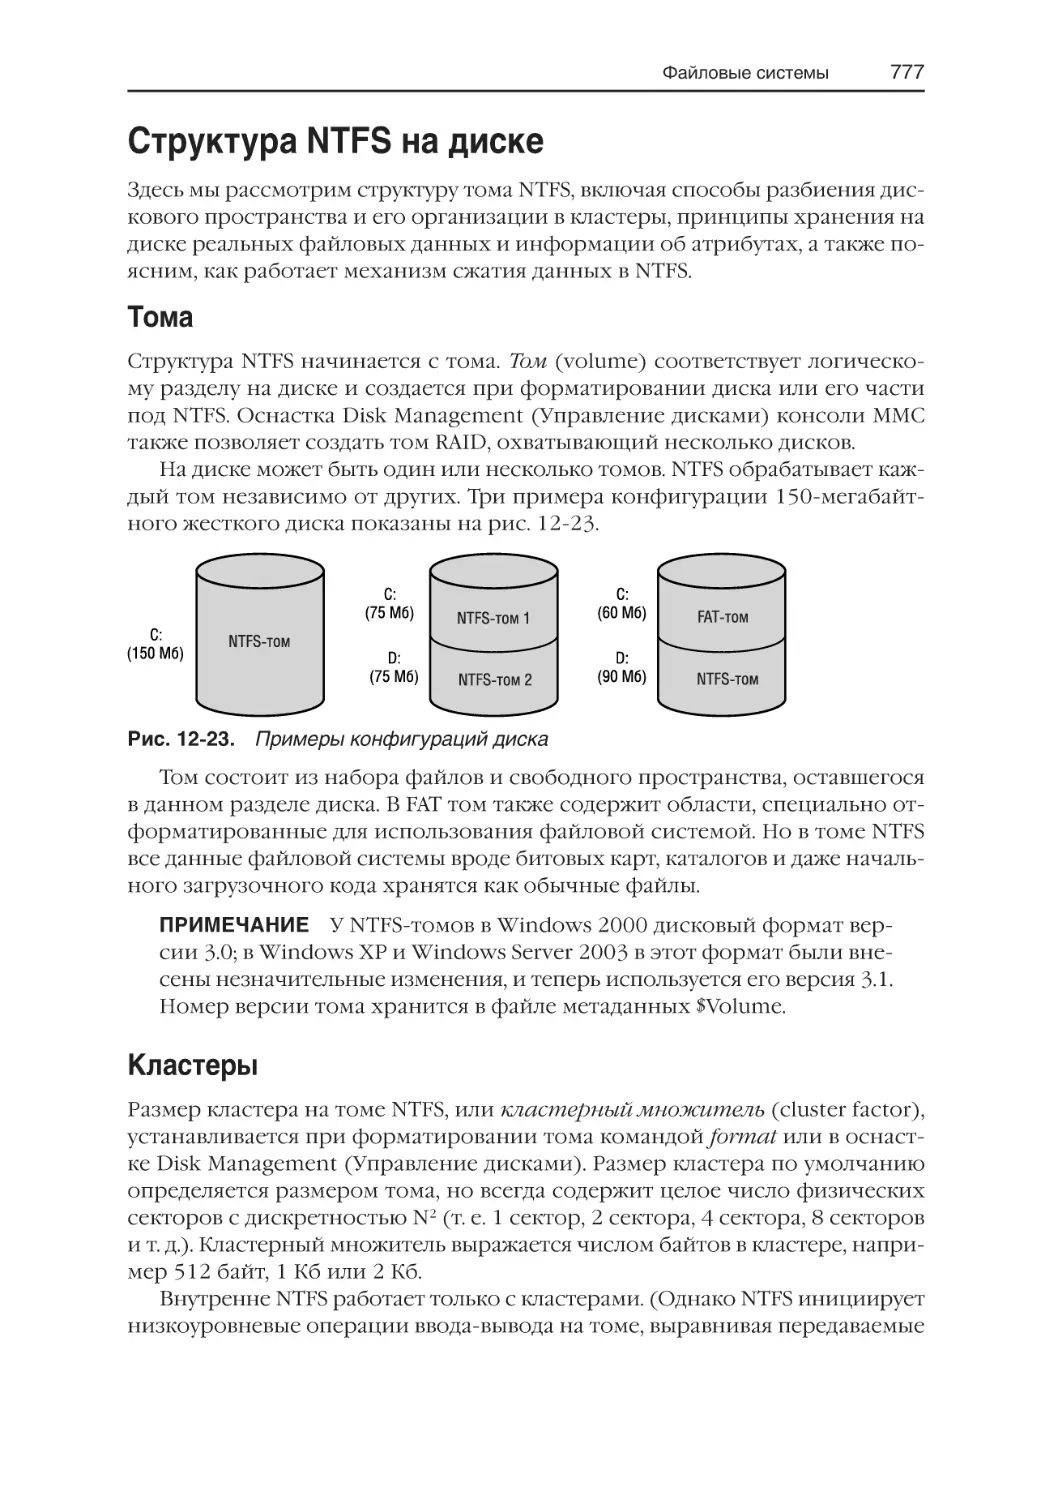 Структура NTFS на диске
Тома
Кластеры